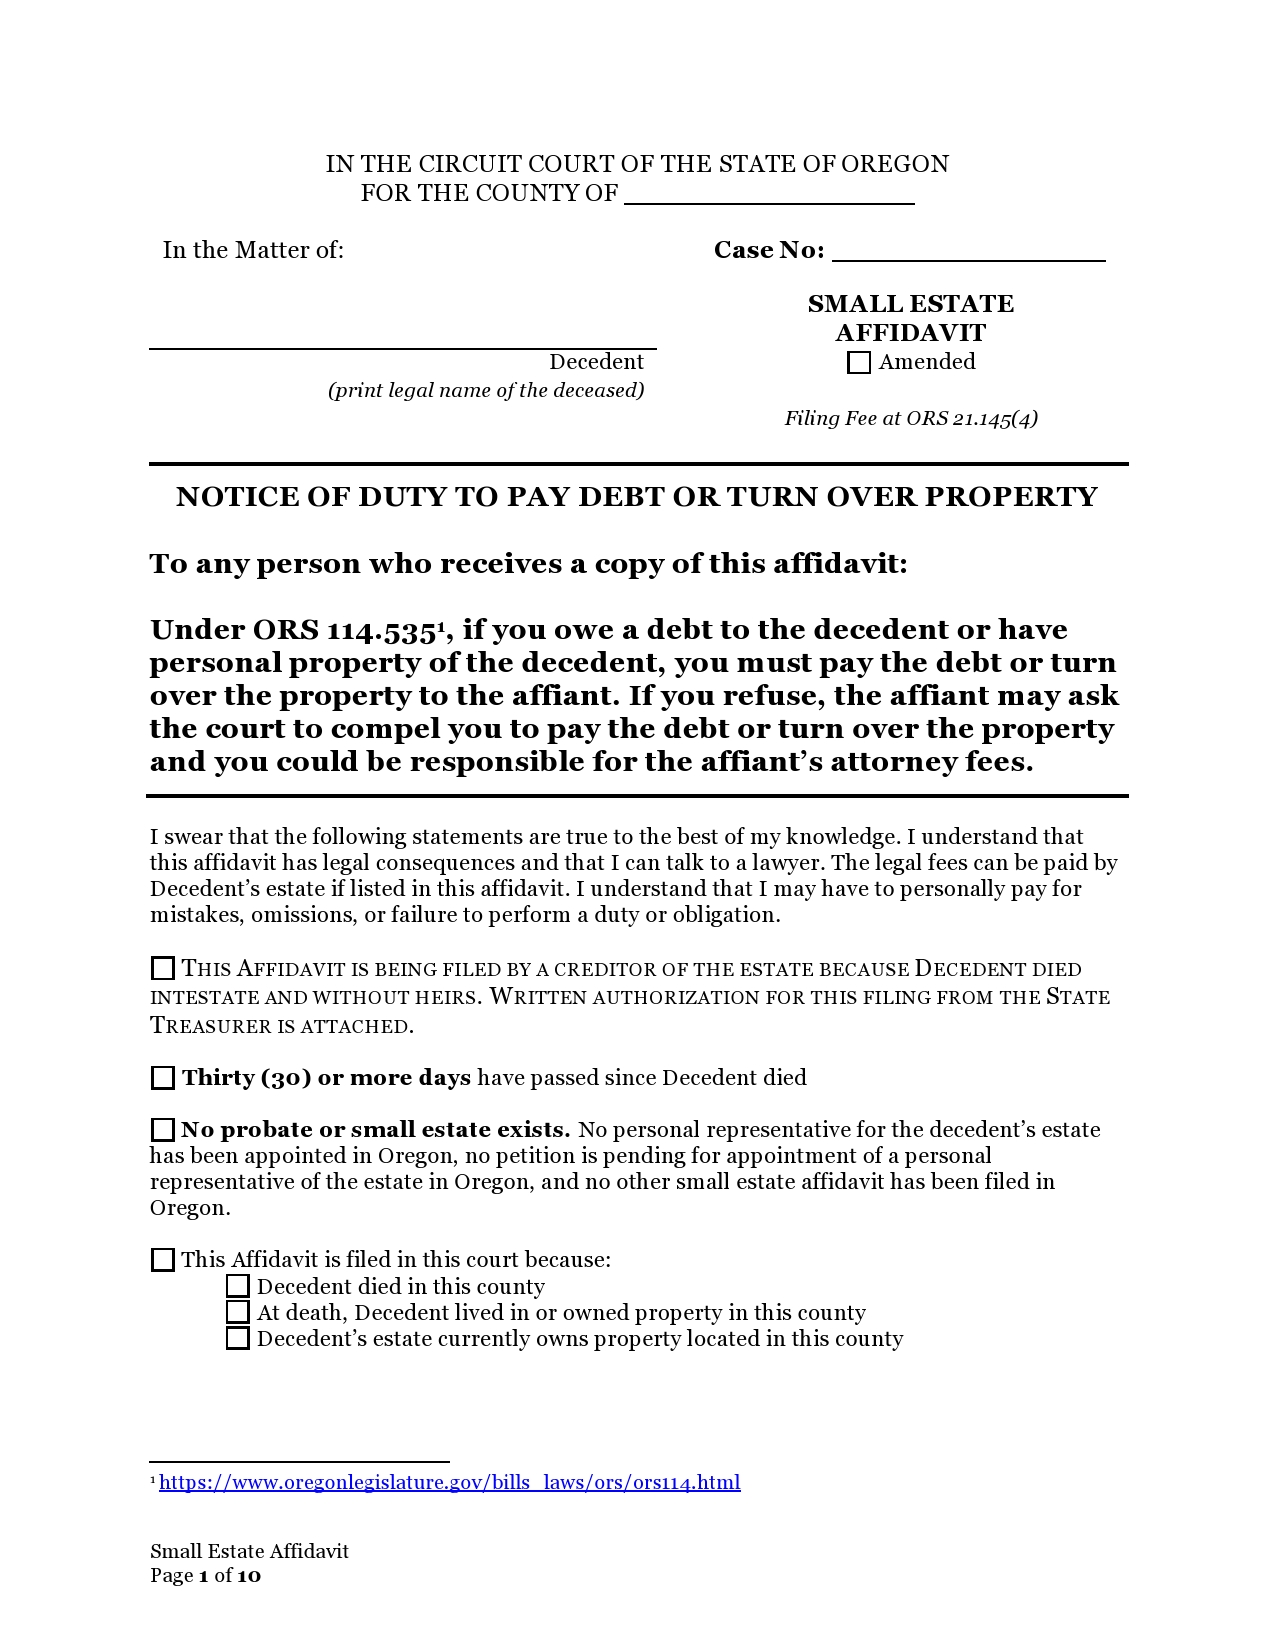 Free small estate affidavit 10